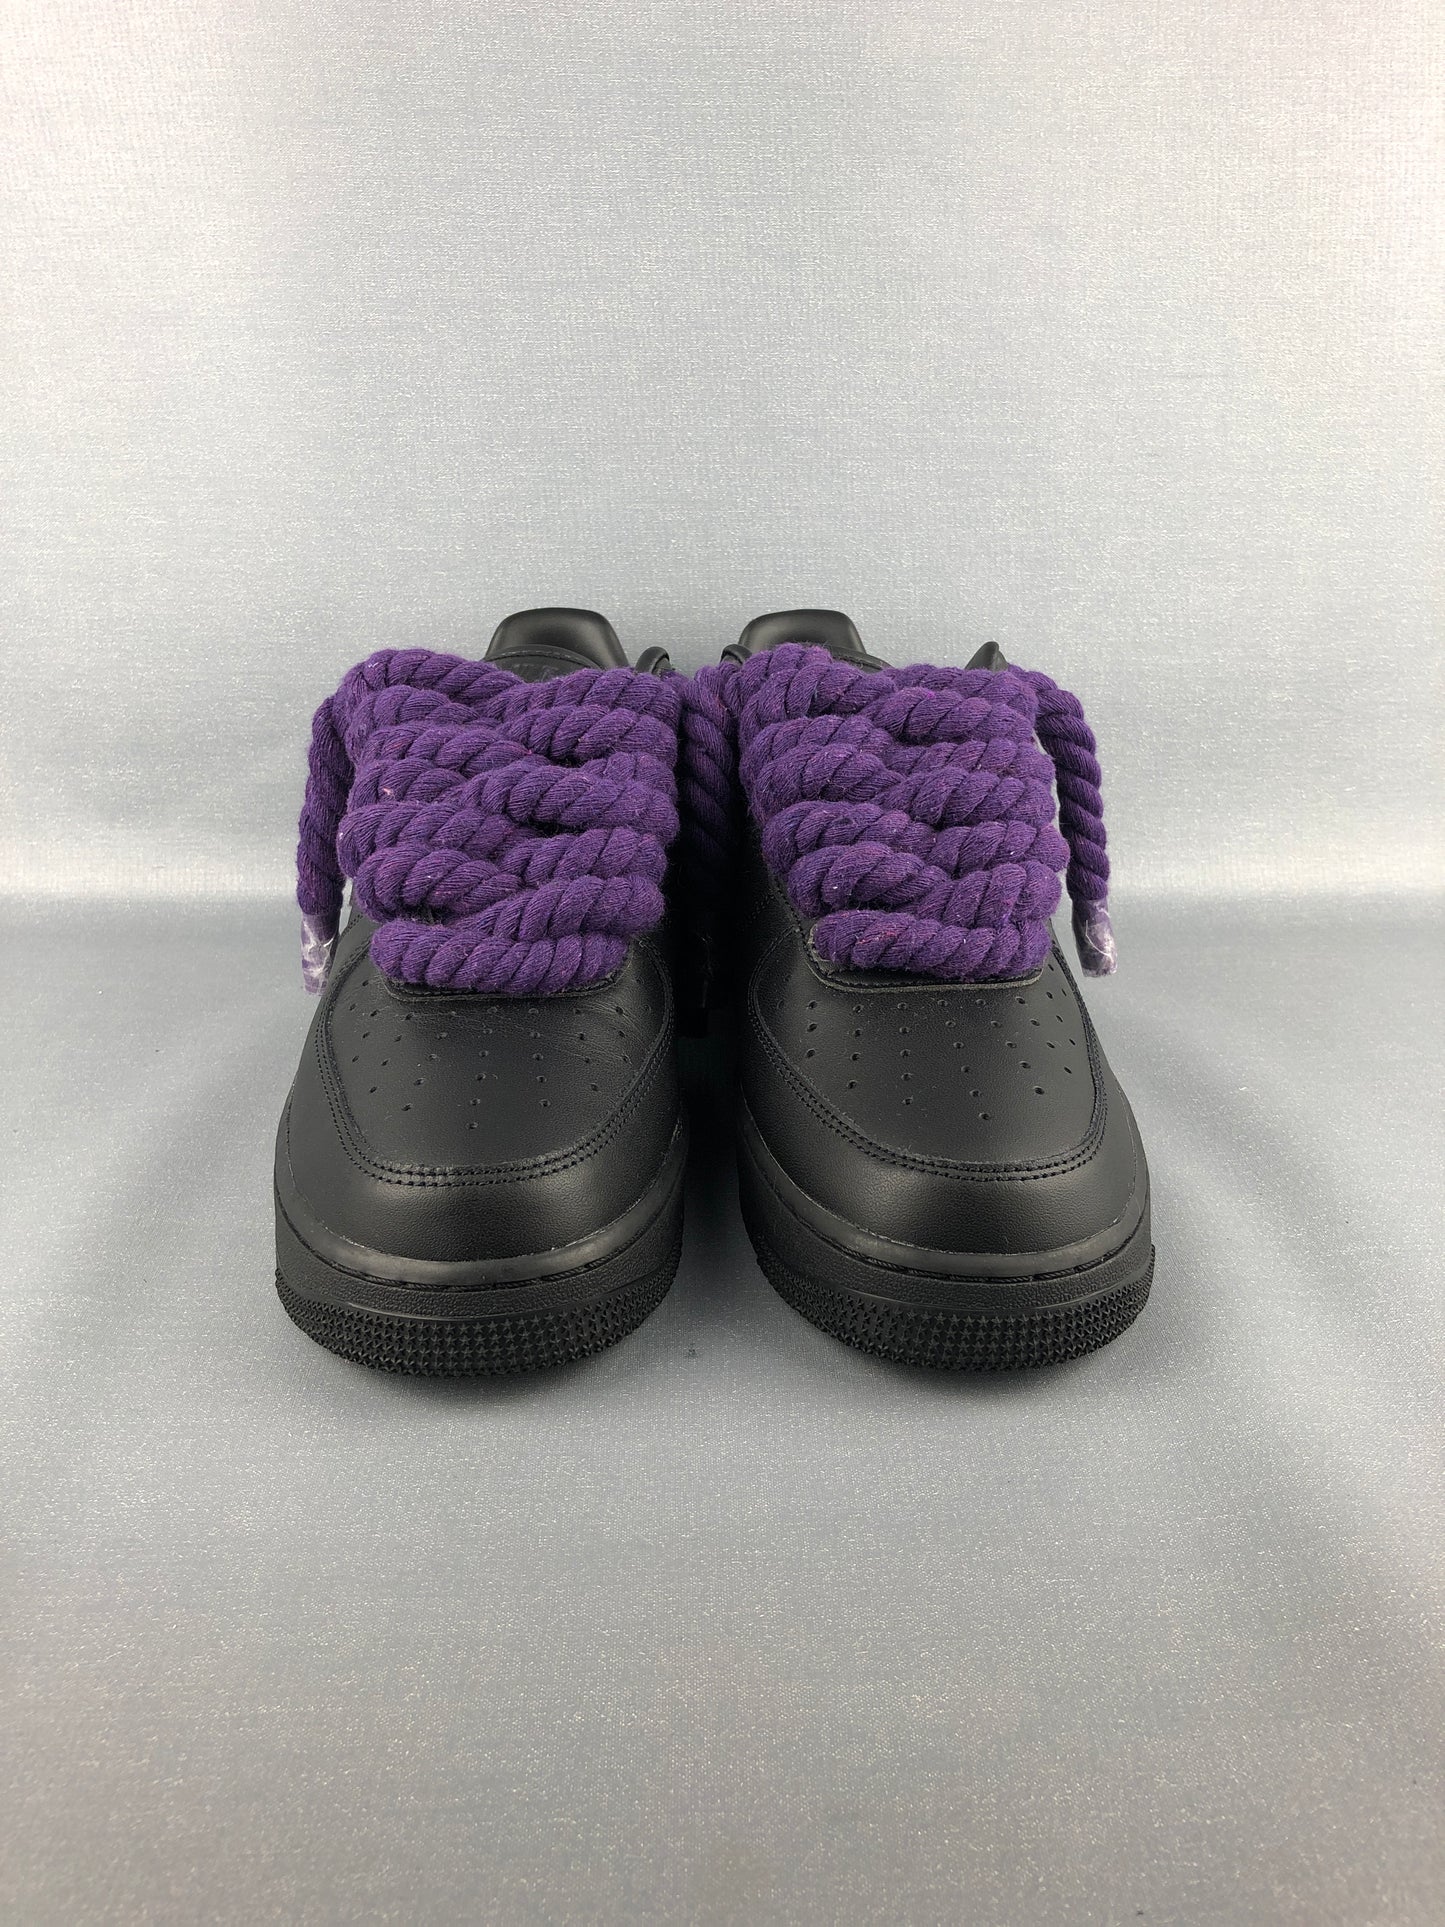 AF1 Black | Rope Forces Purple 